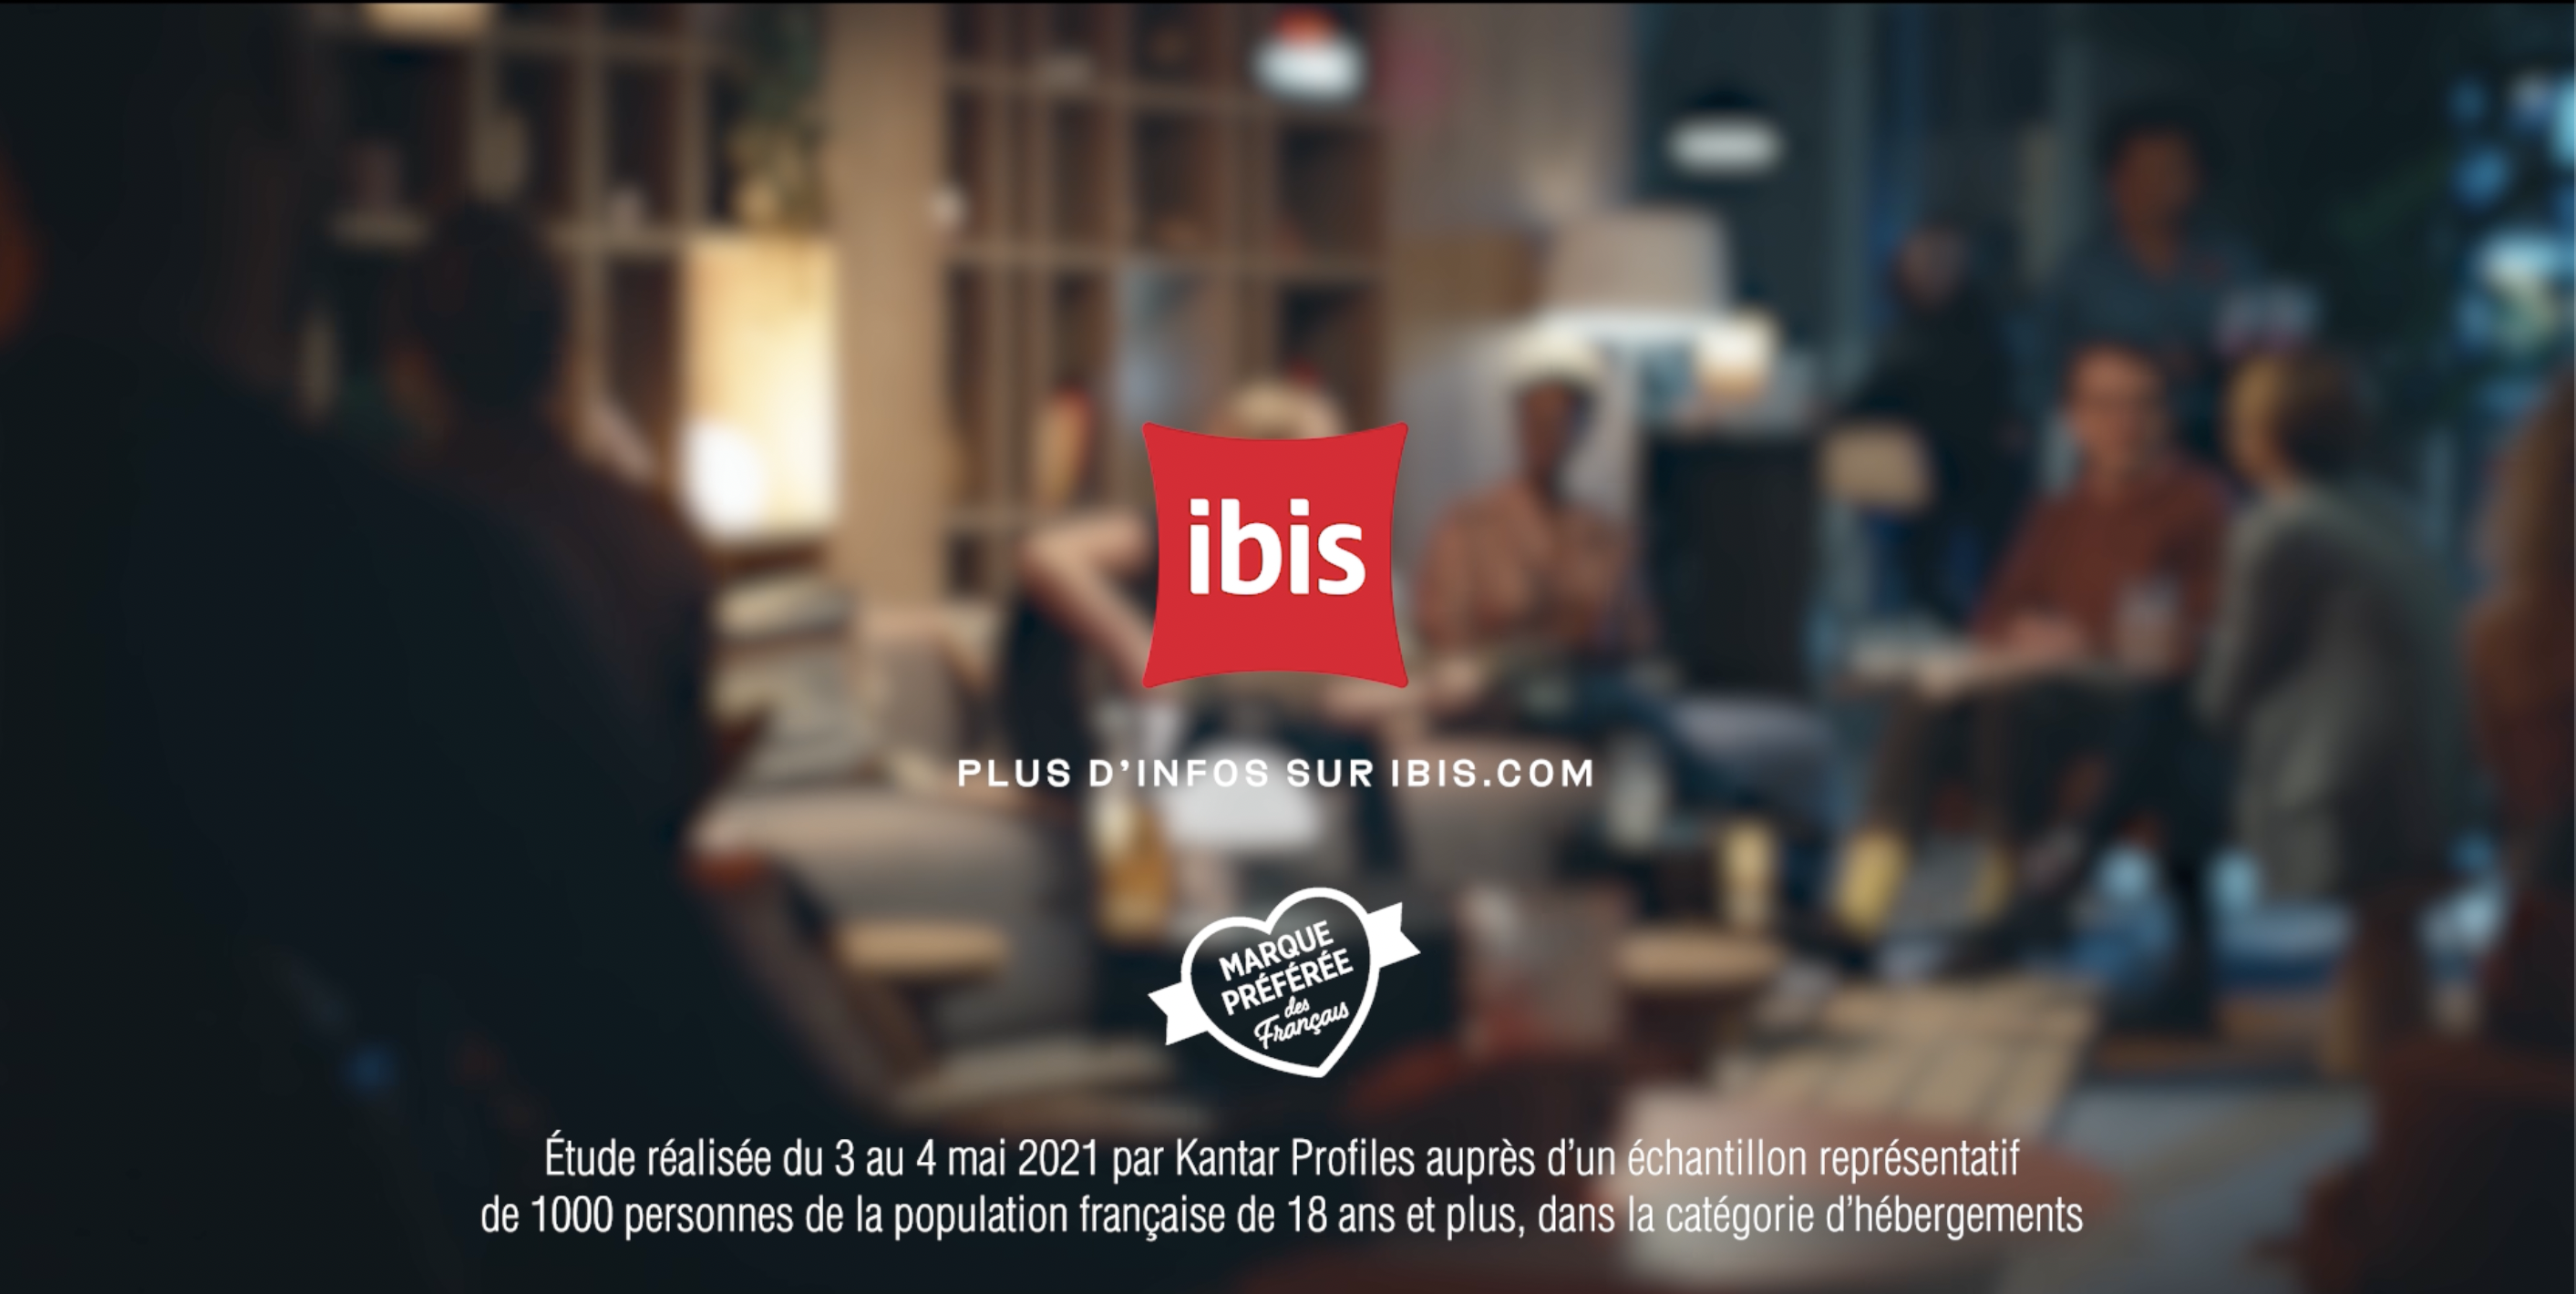 IBIS: SPOT TV